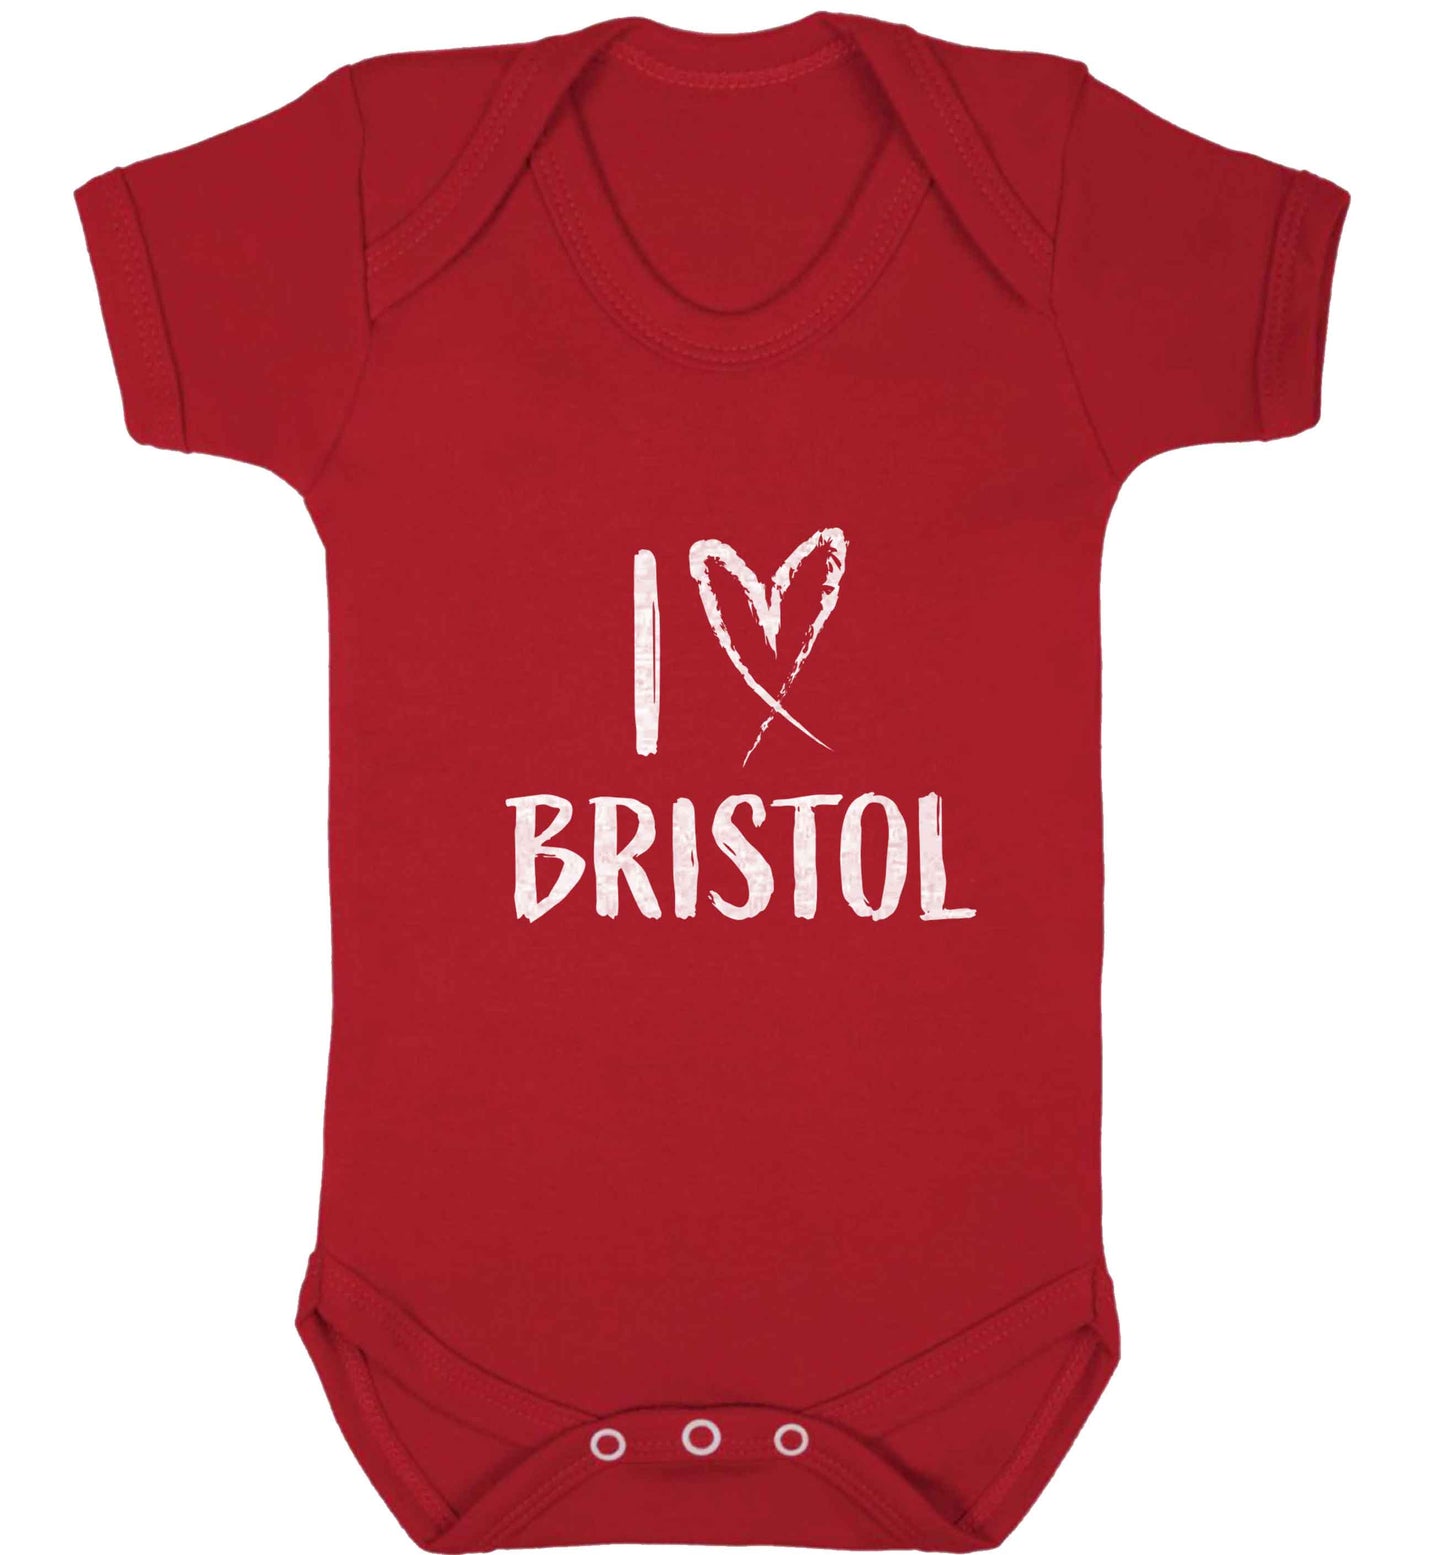 I love Bristol baby vest red 18-24 months